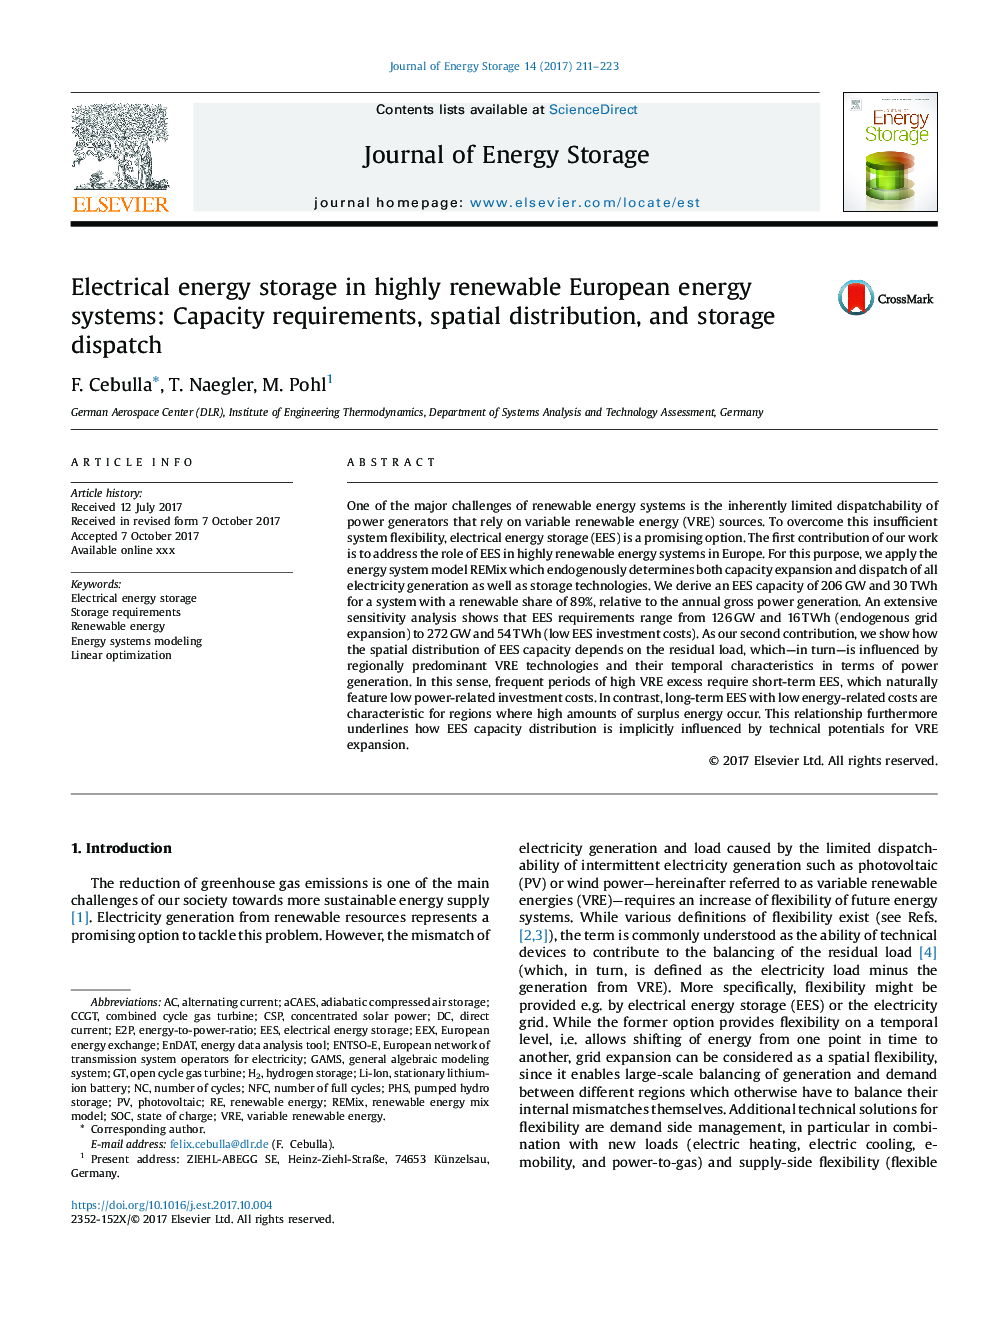 ذخیره انرژی الکتریکی در سیستم های انرژی اروپایی بسیار تجدید پذیر: نیازهای ظرفیت، توزیع فضایی و ارسال ذخیره سازی 